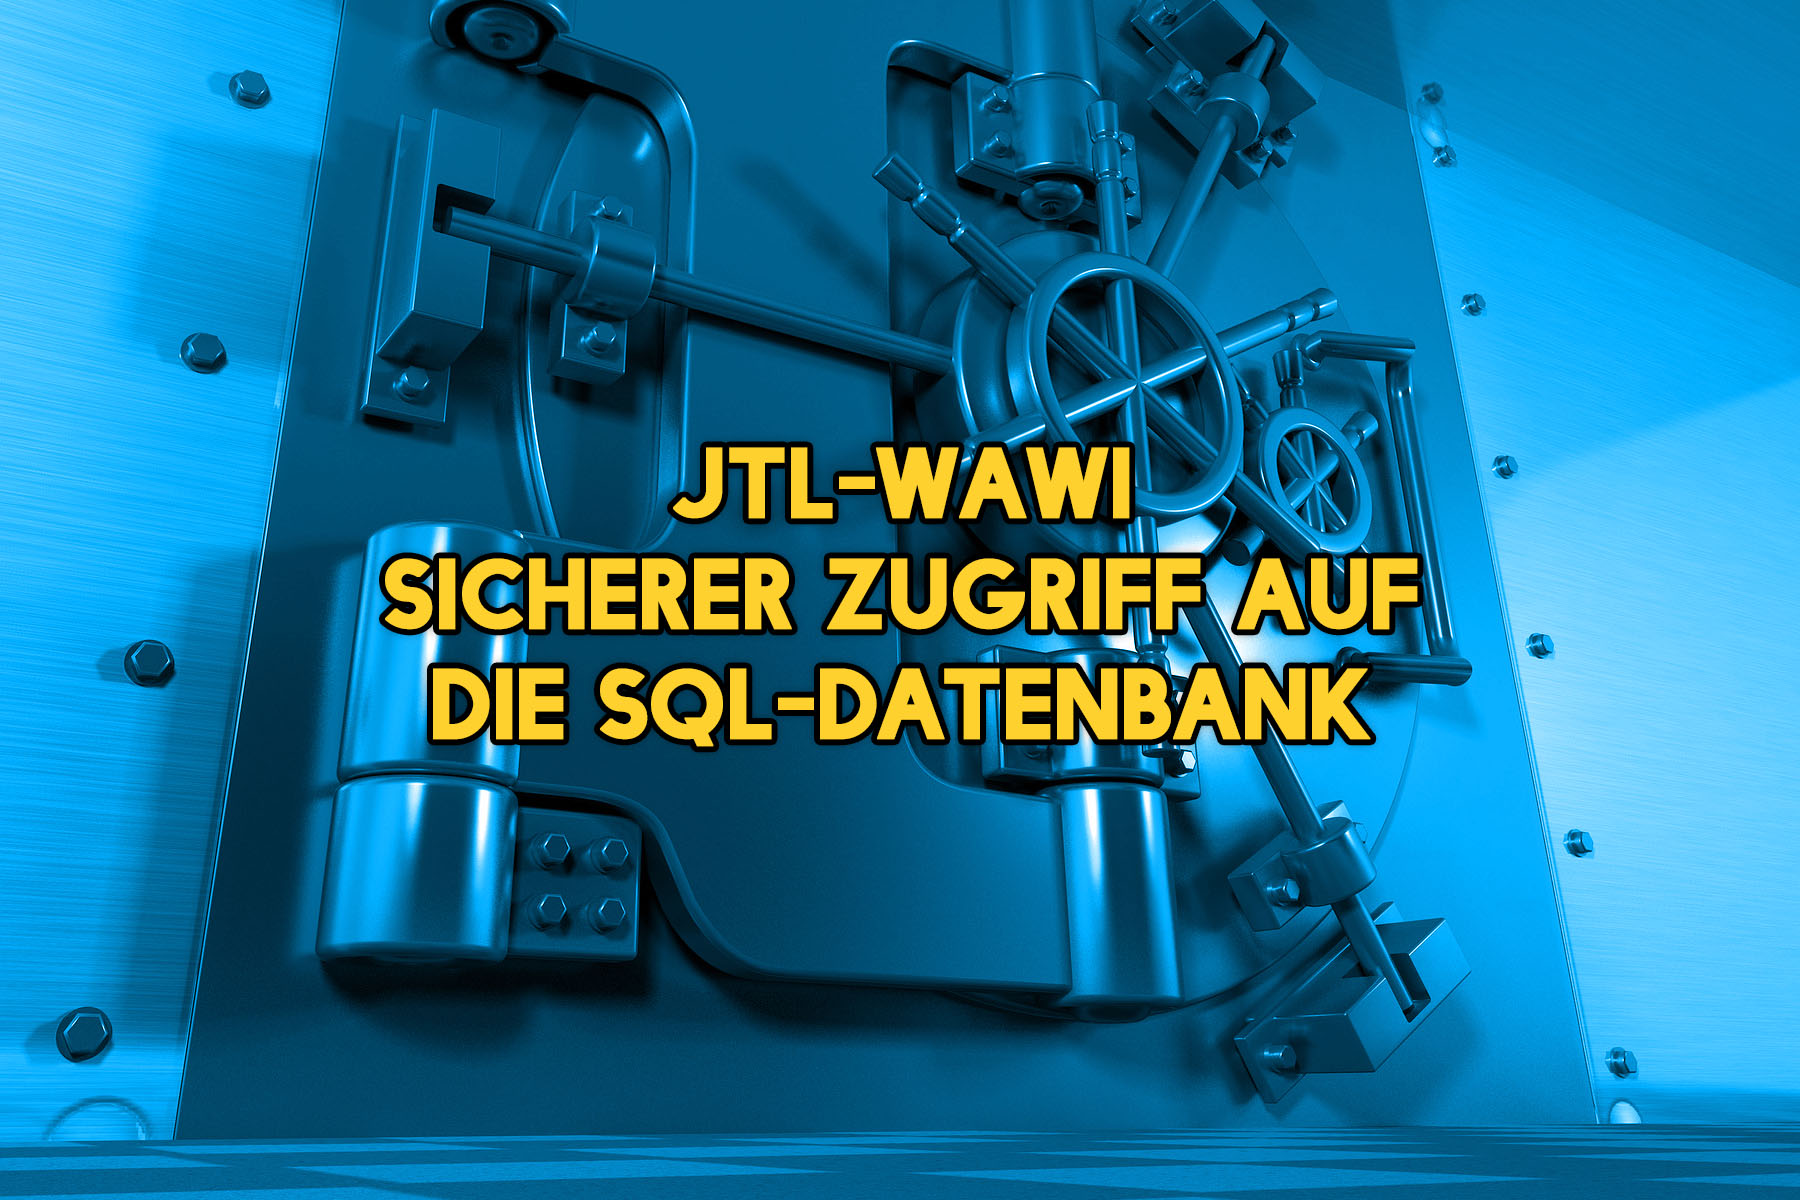 JTL-Wawi – Sicherer Zugriff auf die SQL-Datenbank